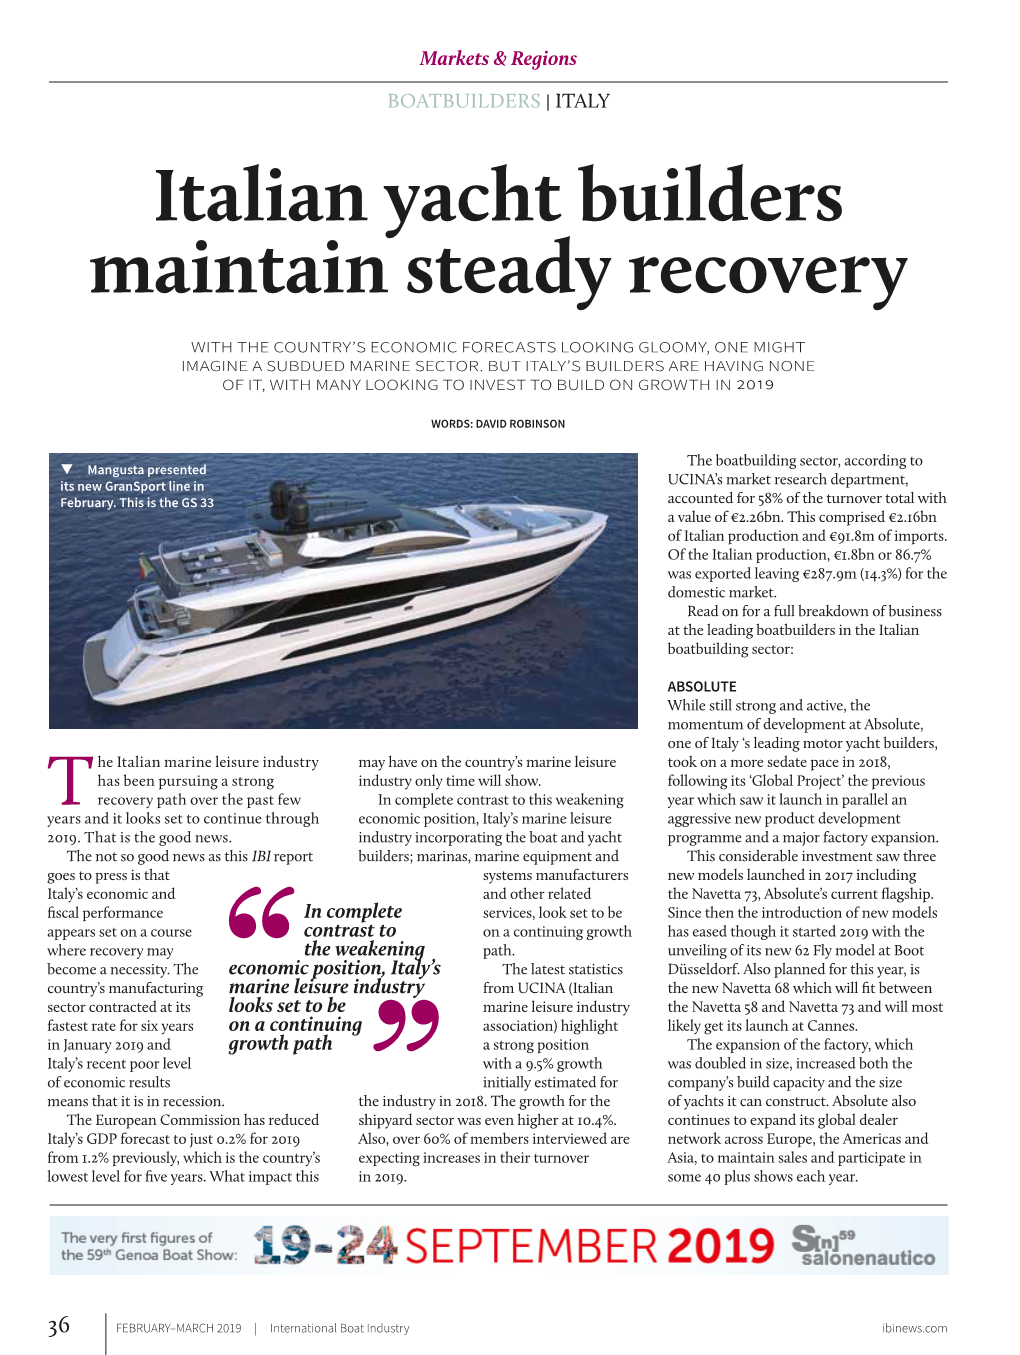 Italian Boat Builders